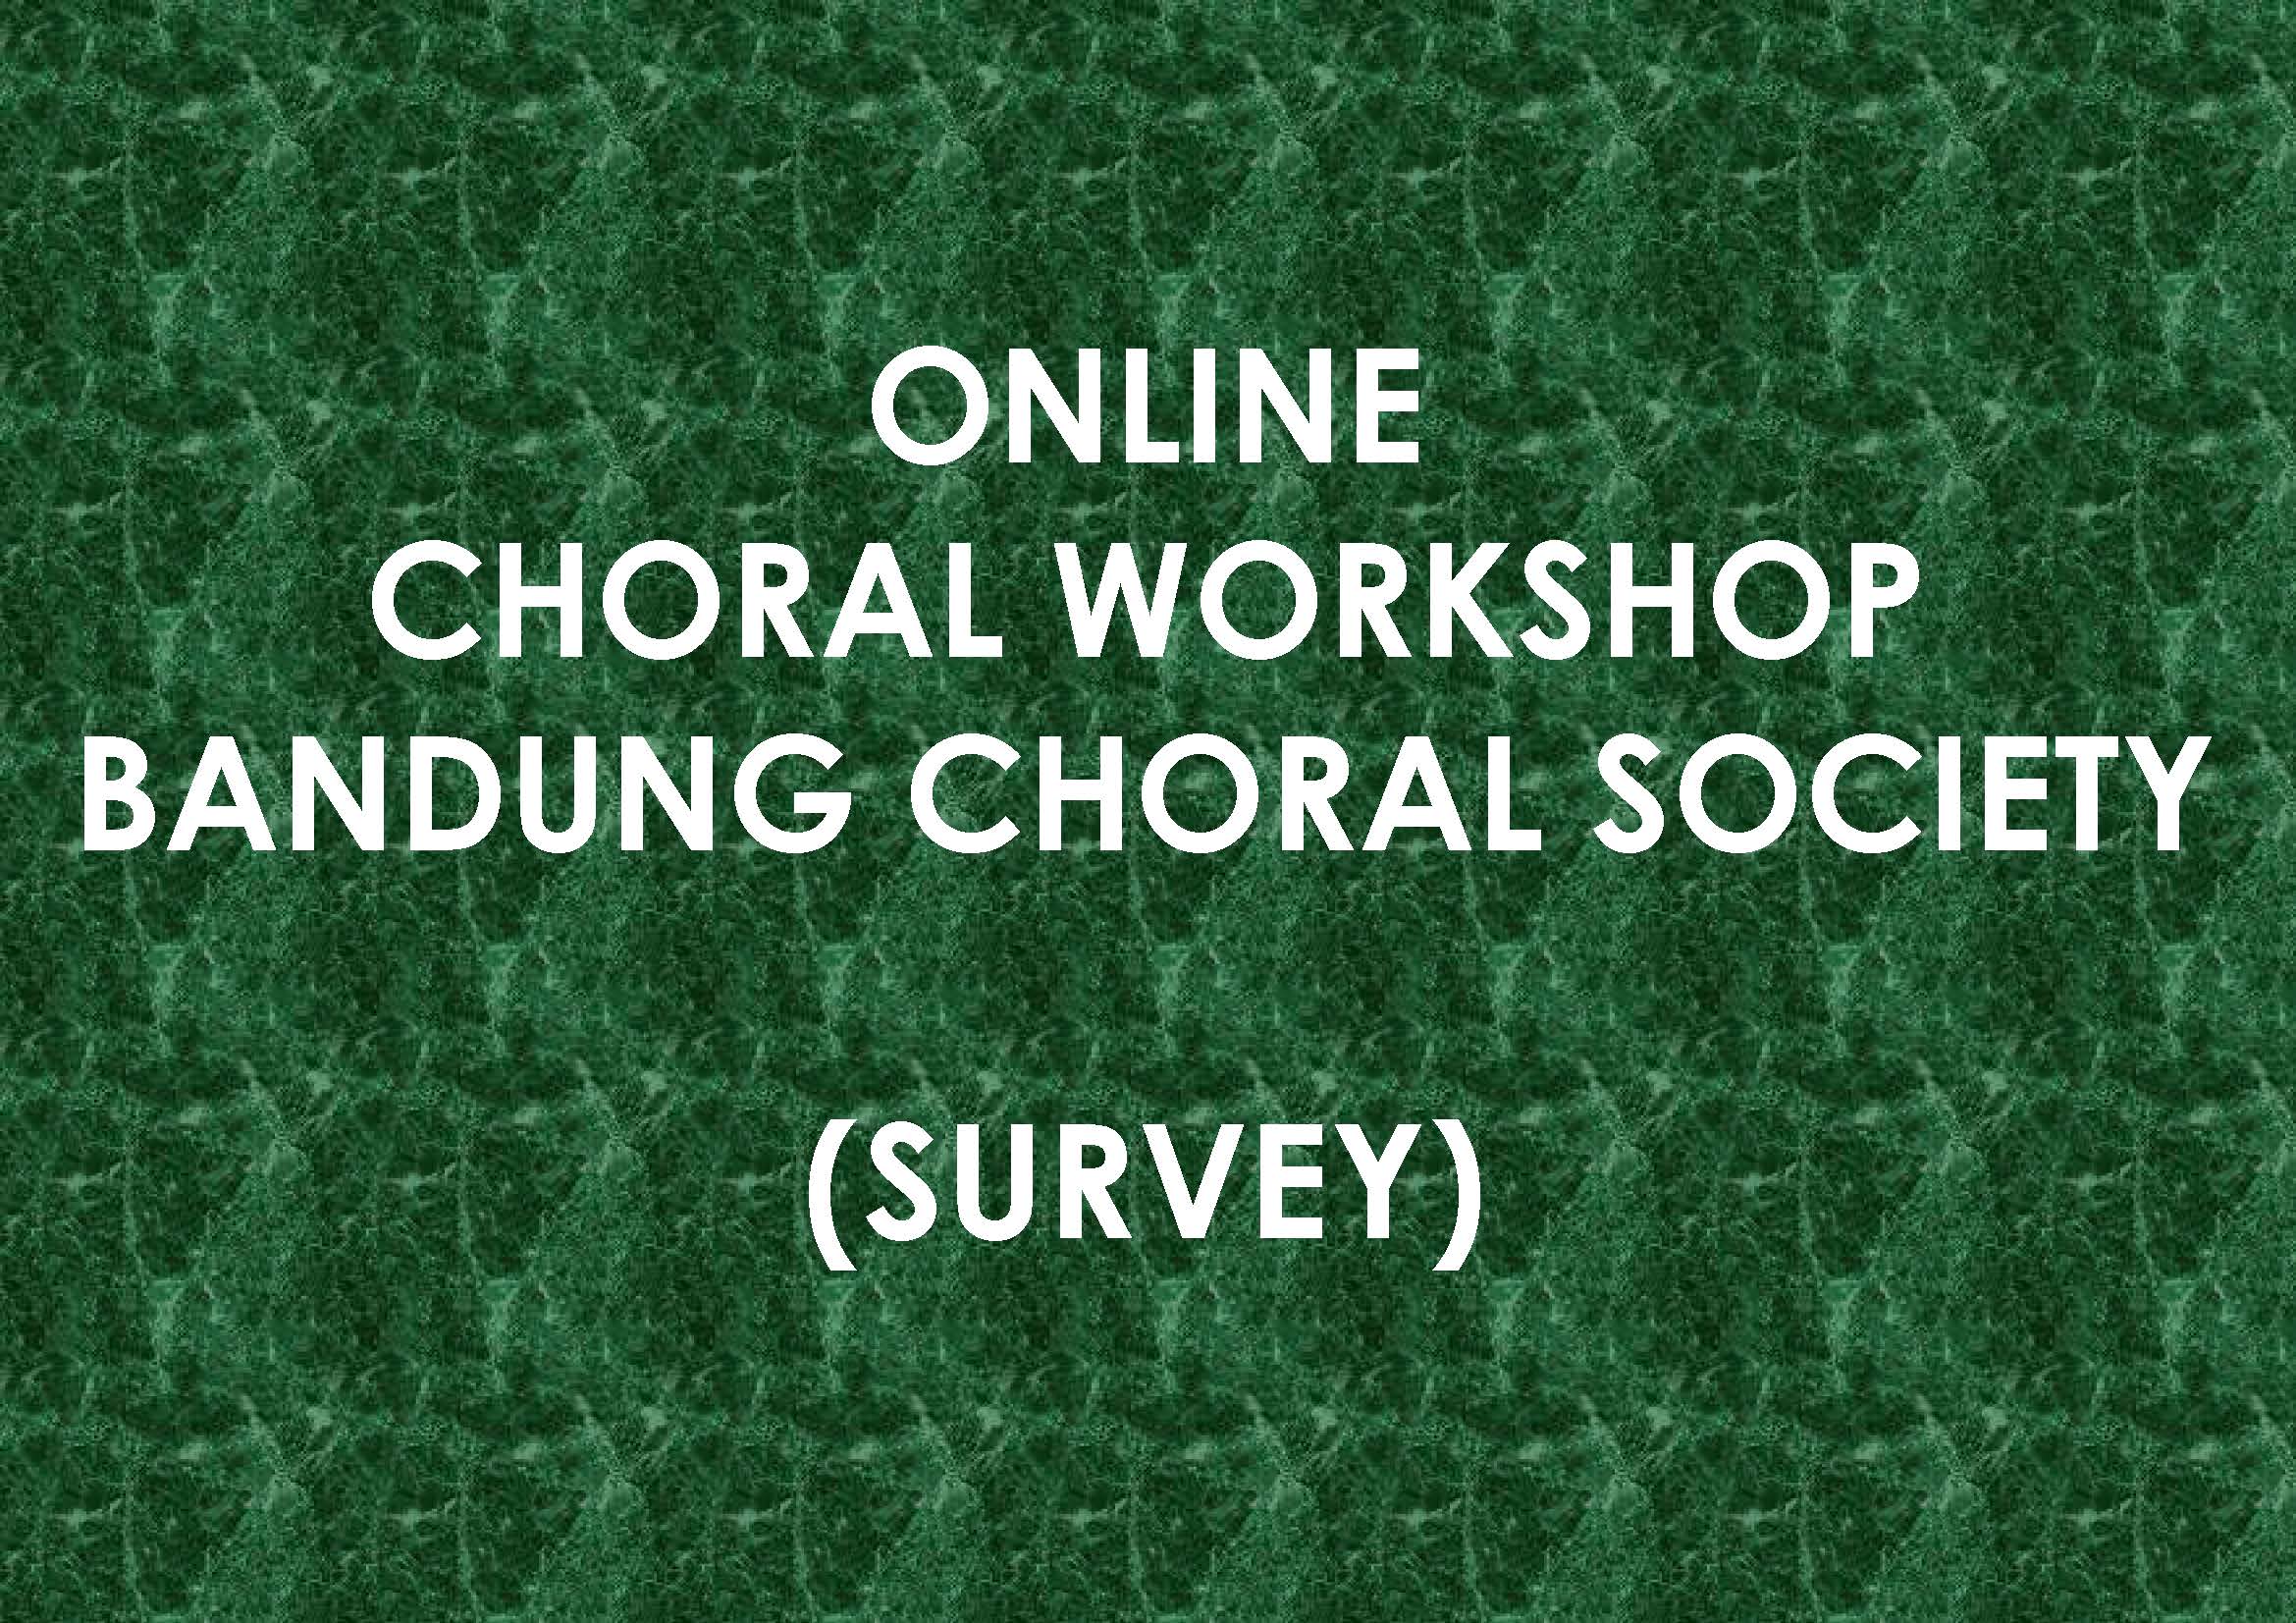 Online Choral Workshop